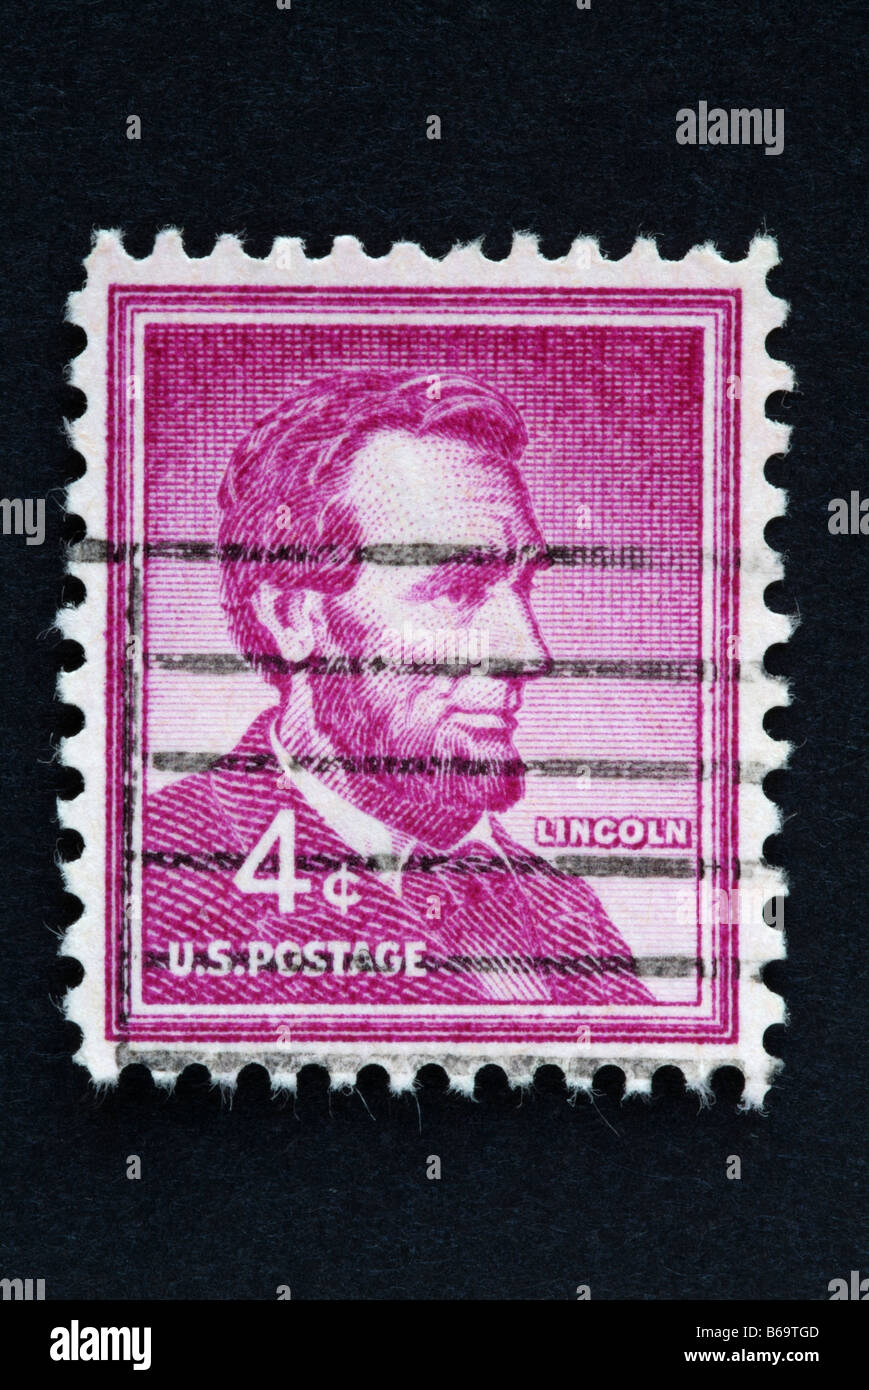 Un timbre-poste de 4 cent US avec l'image d'Abraham Lincoln. Banque D'Images